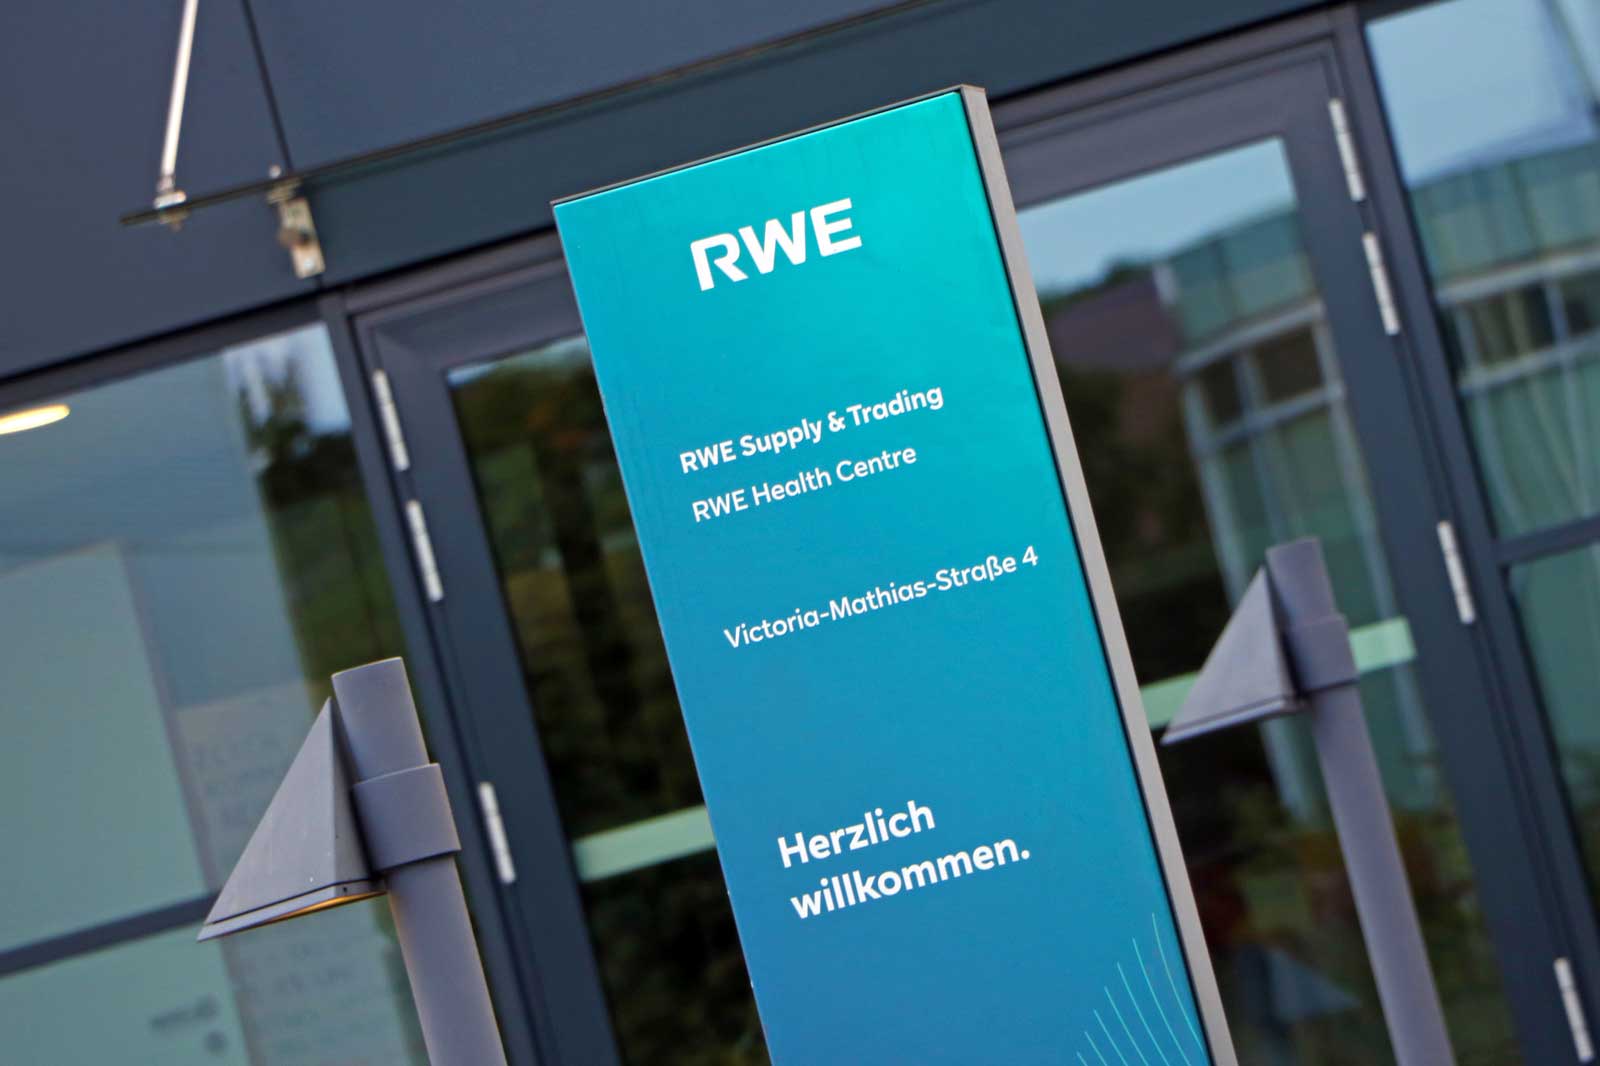 Eingang zum health care center am RWE Campus in Essen